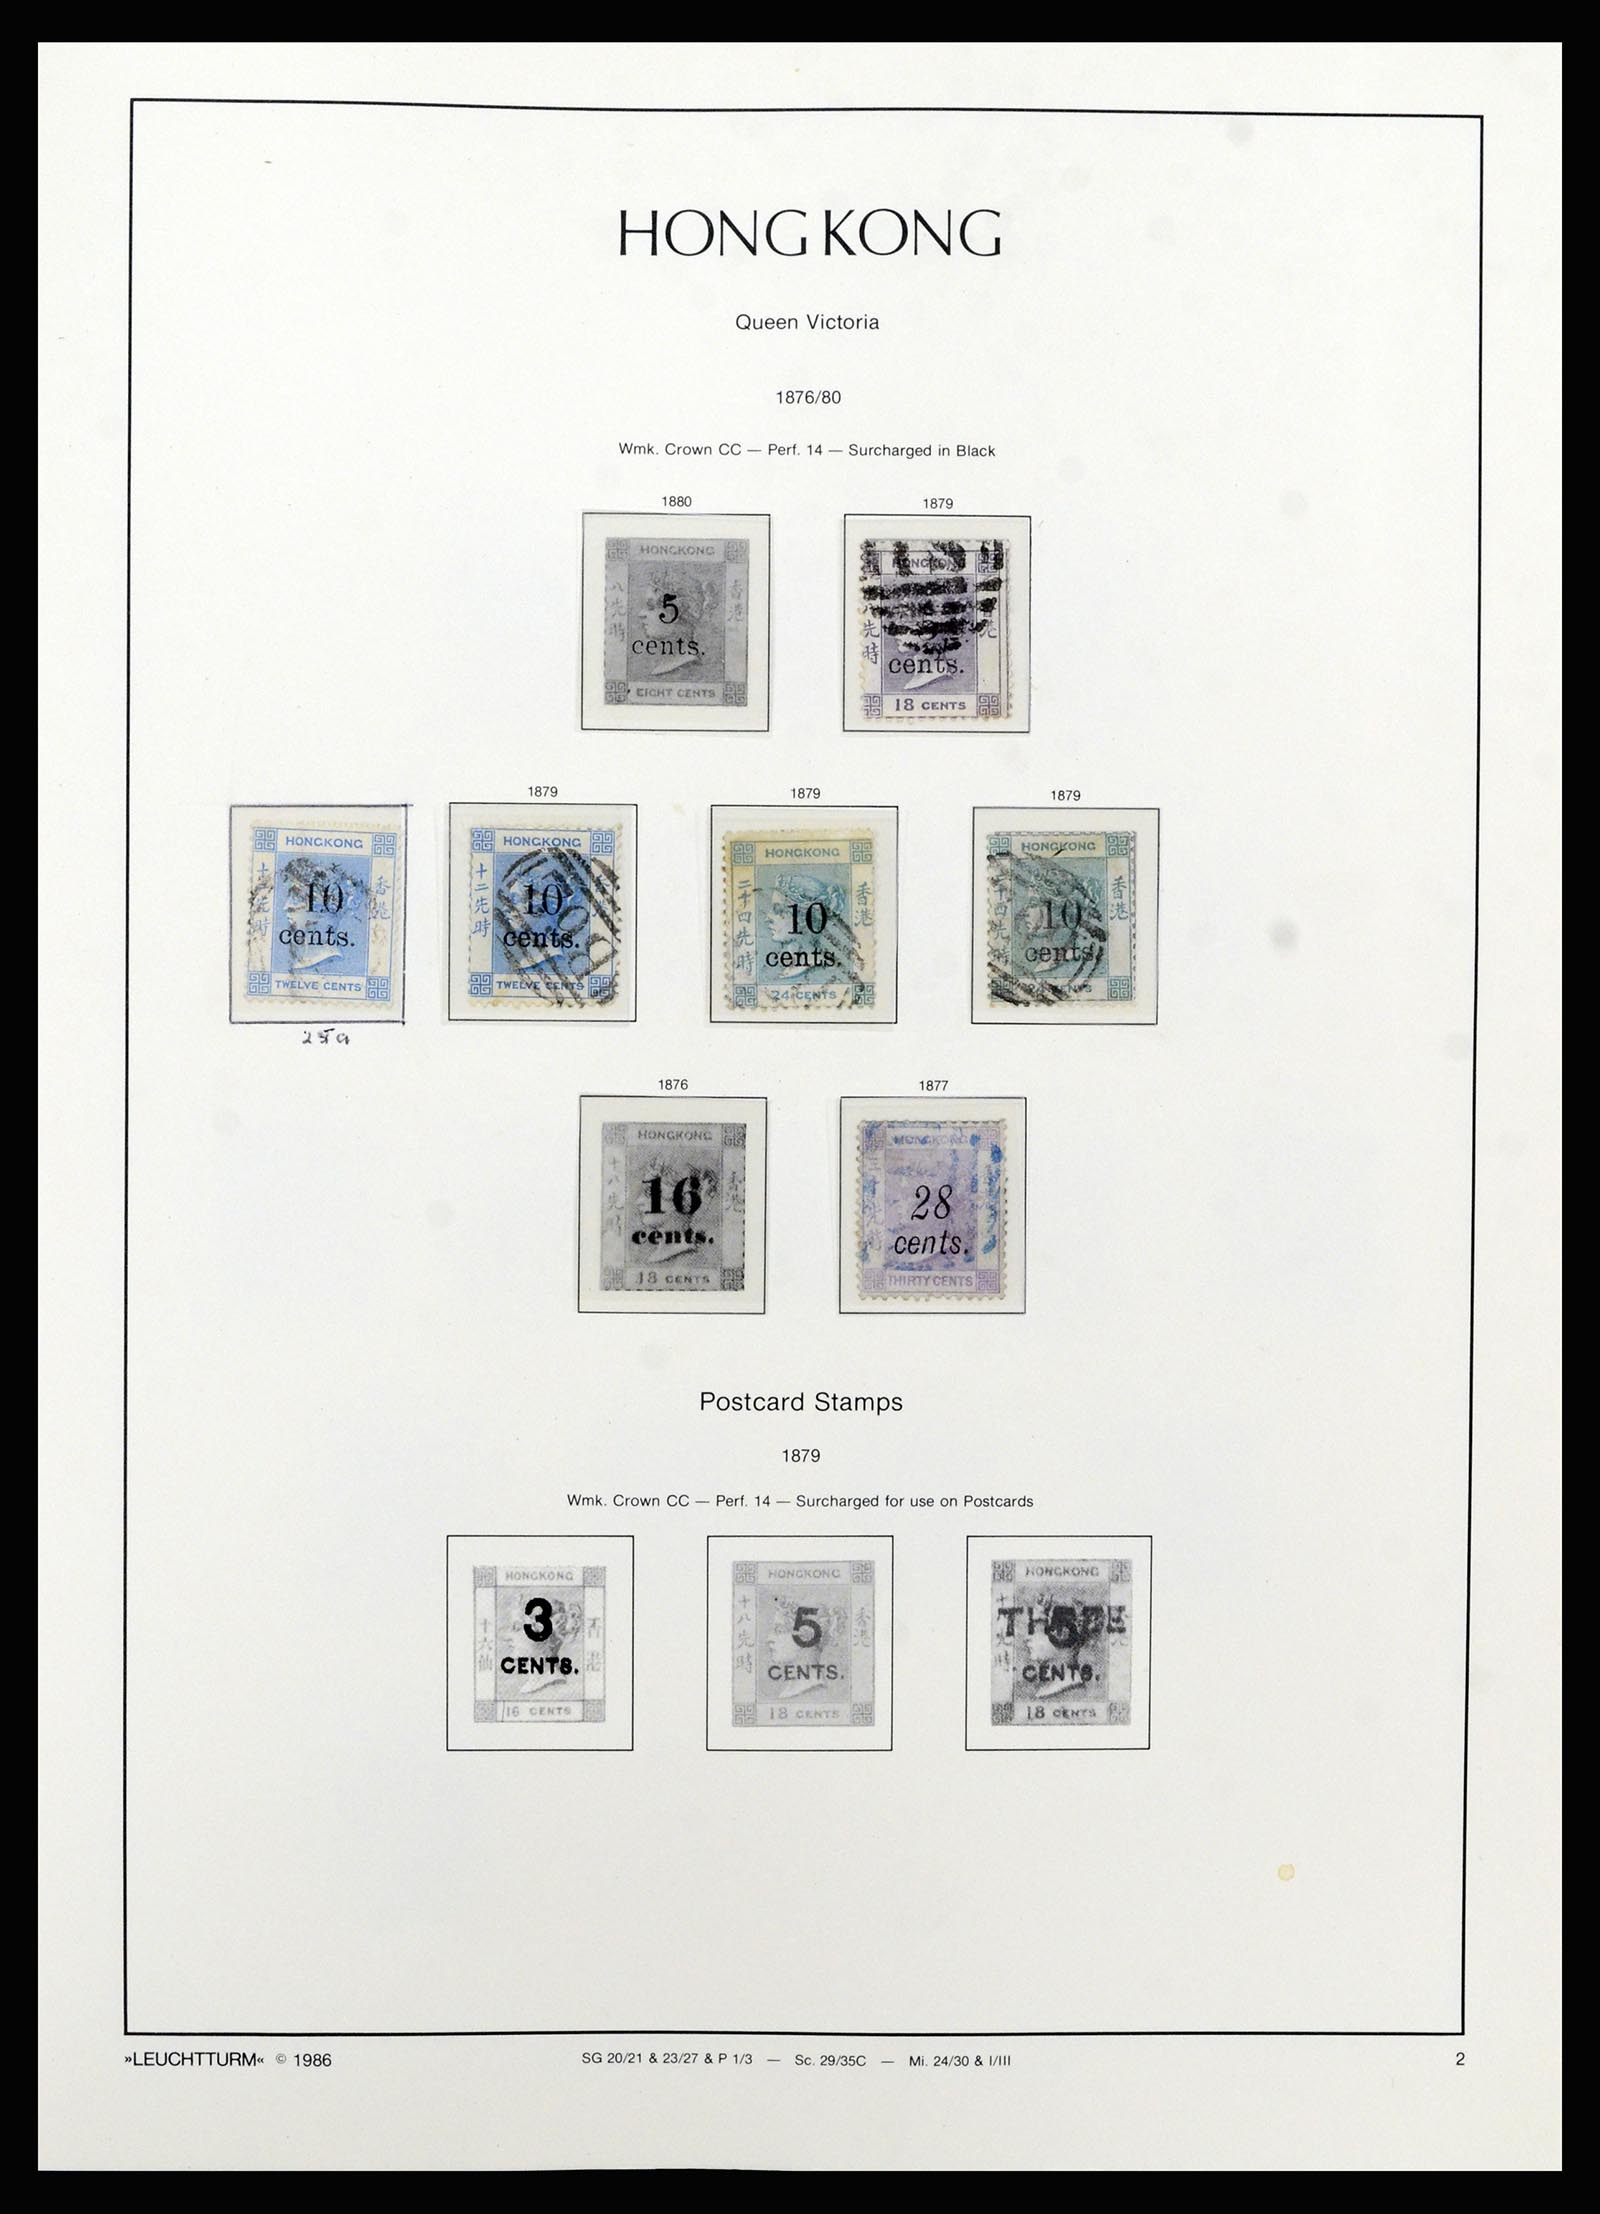 37070 002 - Stamp collection 37070 Hong Kong 1862-1996.